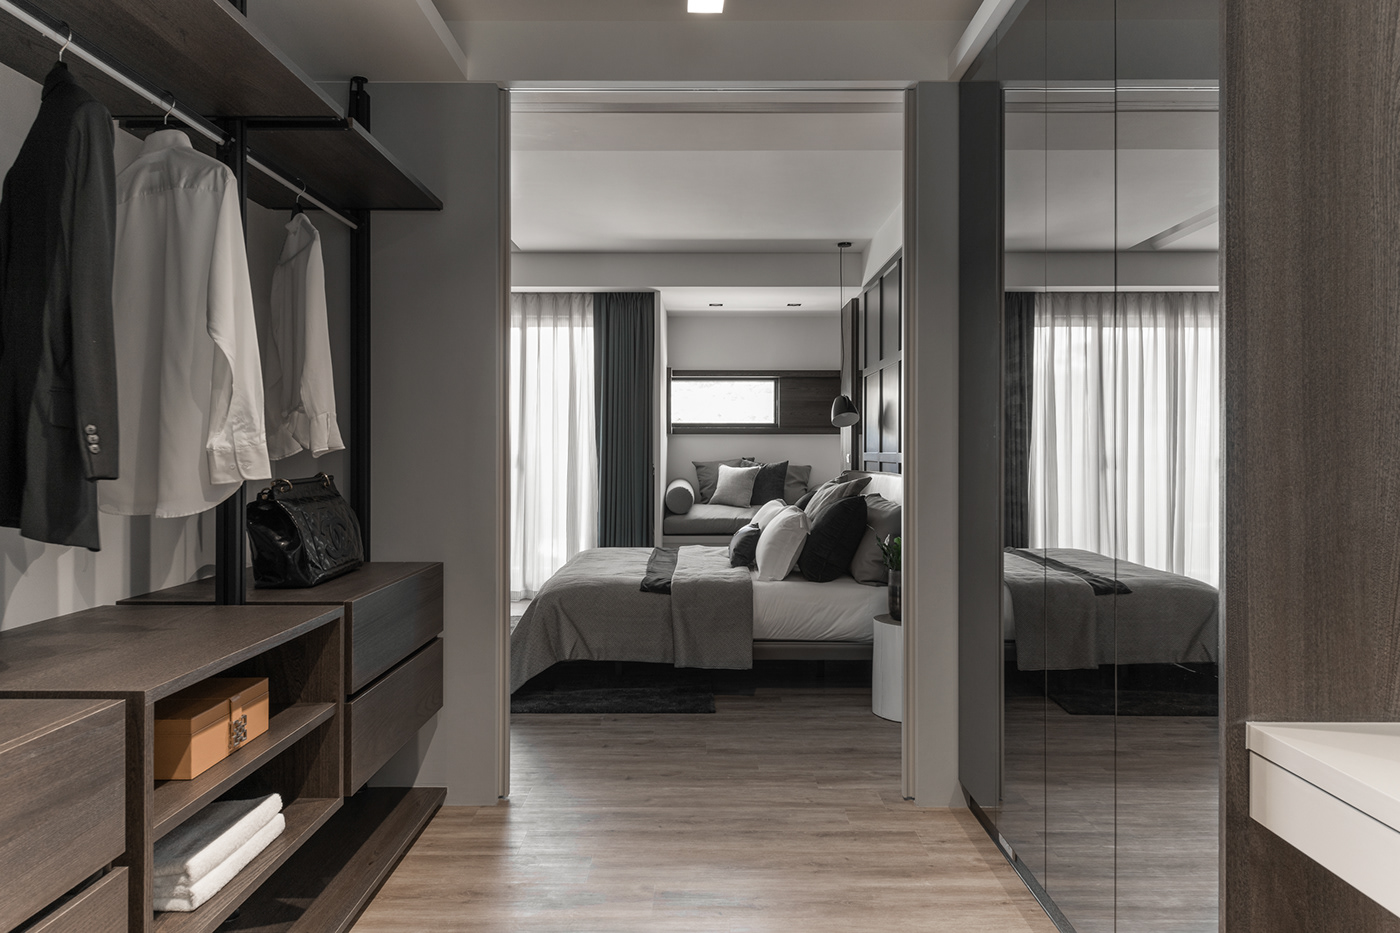 室內設計 居家設計 新竹室內設計 現代風 現代風設計 竹北室內設計 Hsinchudesign TaiwanDesign Housesolver